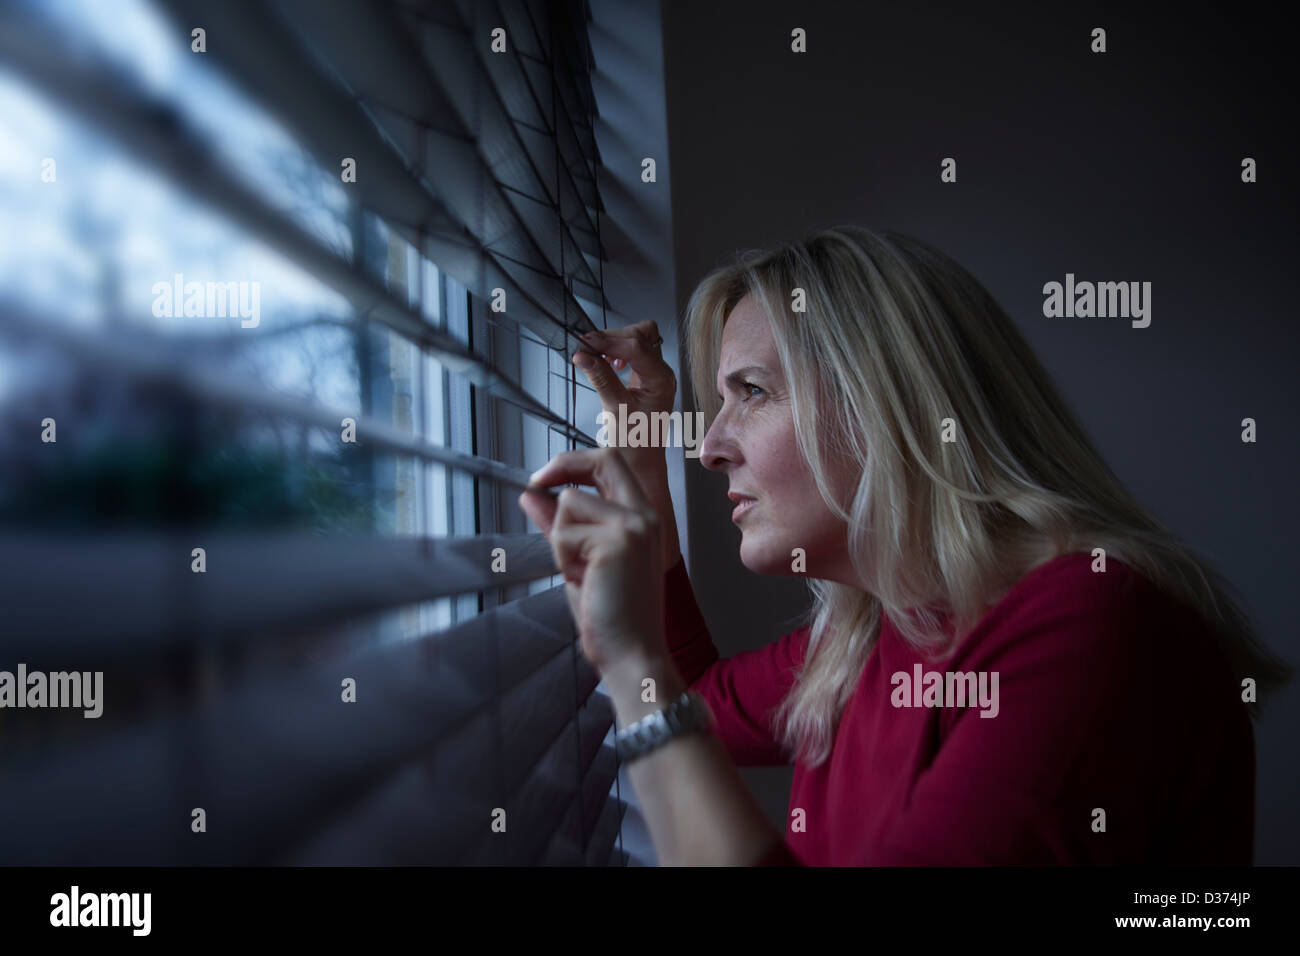 Profilo di una donna con capelli lunghi biondi, il peering attraverso una finestra cieco dall'interno guardando fuori, luce sta colpendo il suo volto. Foto Stock